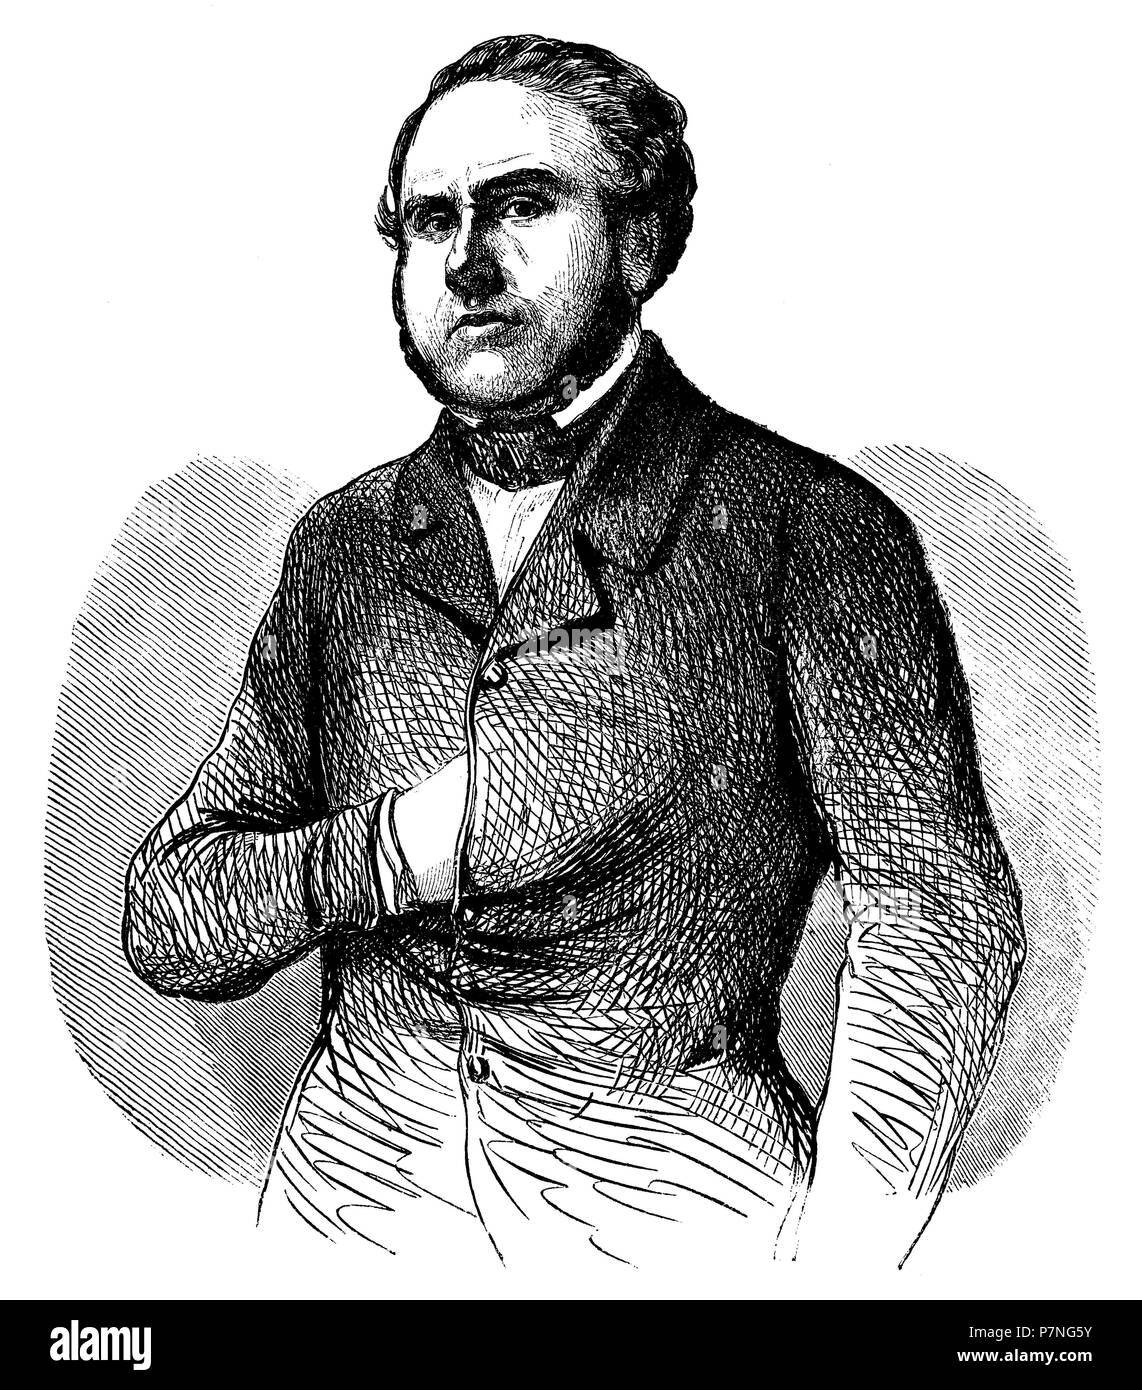 Alexandre-August Ledru-Rollin (1807-1874), abogado y político republicano progresista francés. Grabado de 1850. Stock Photo